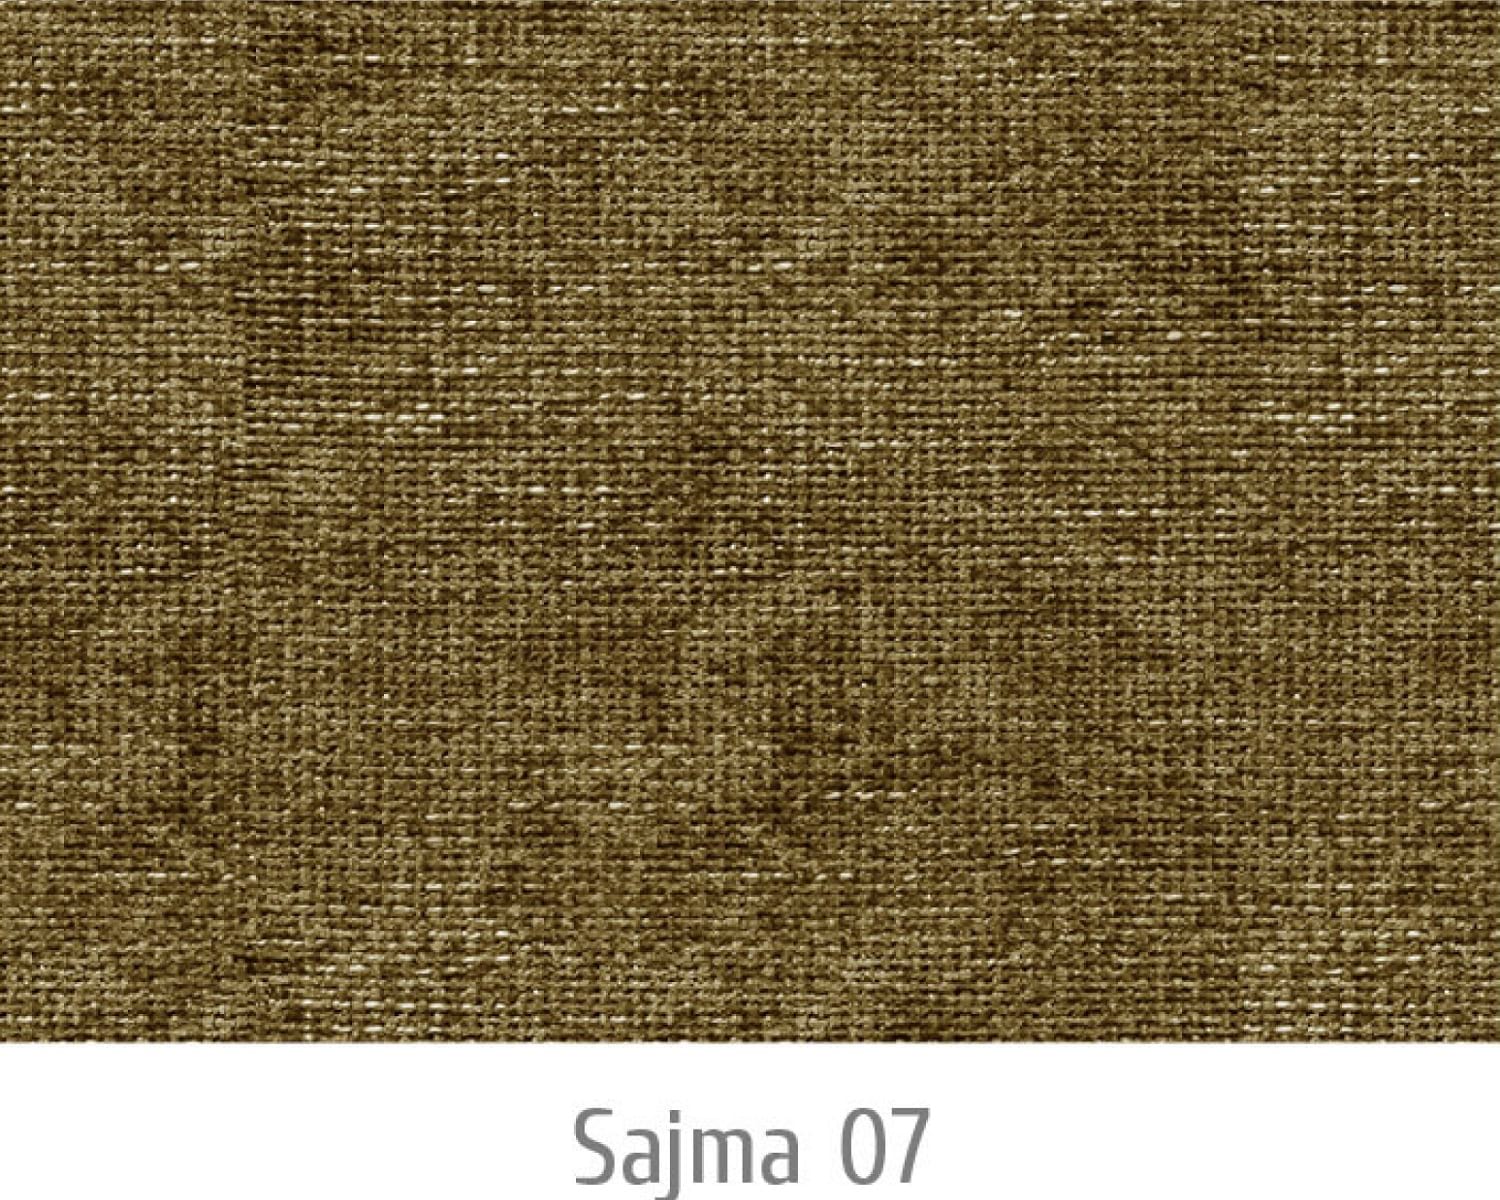 Sajma07